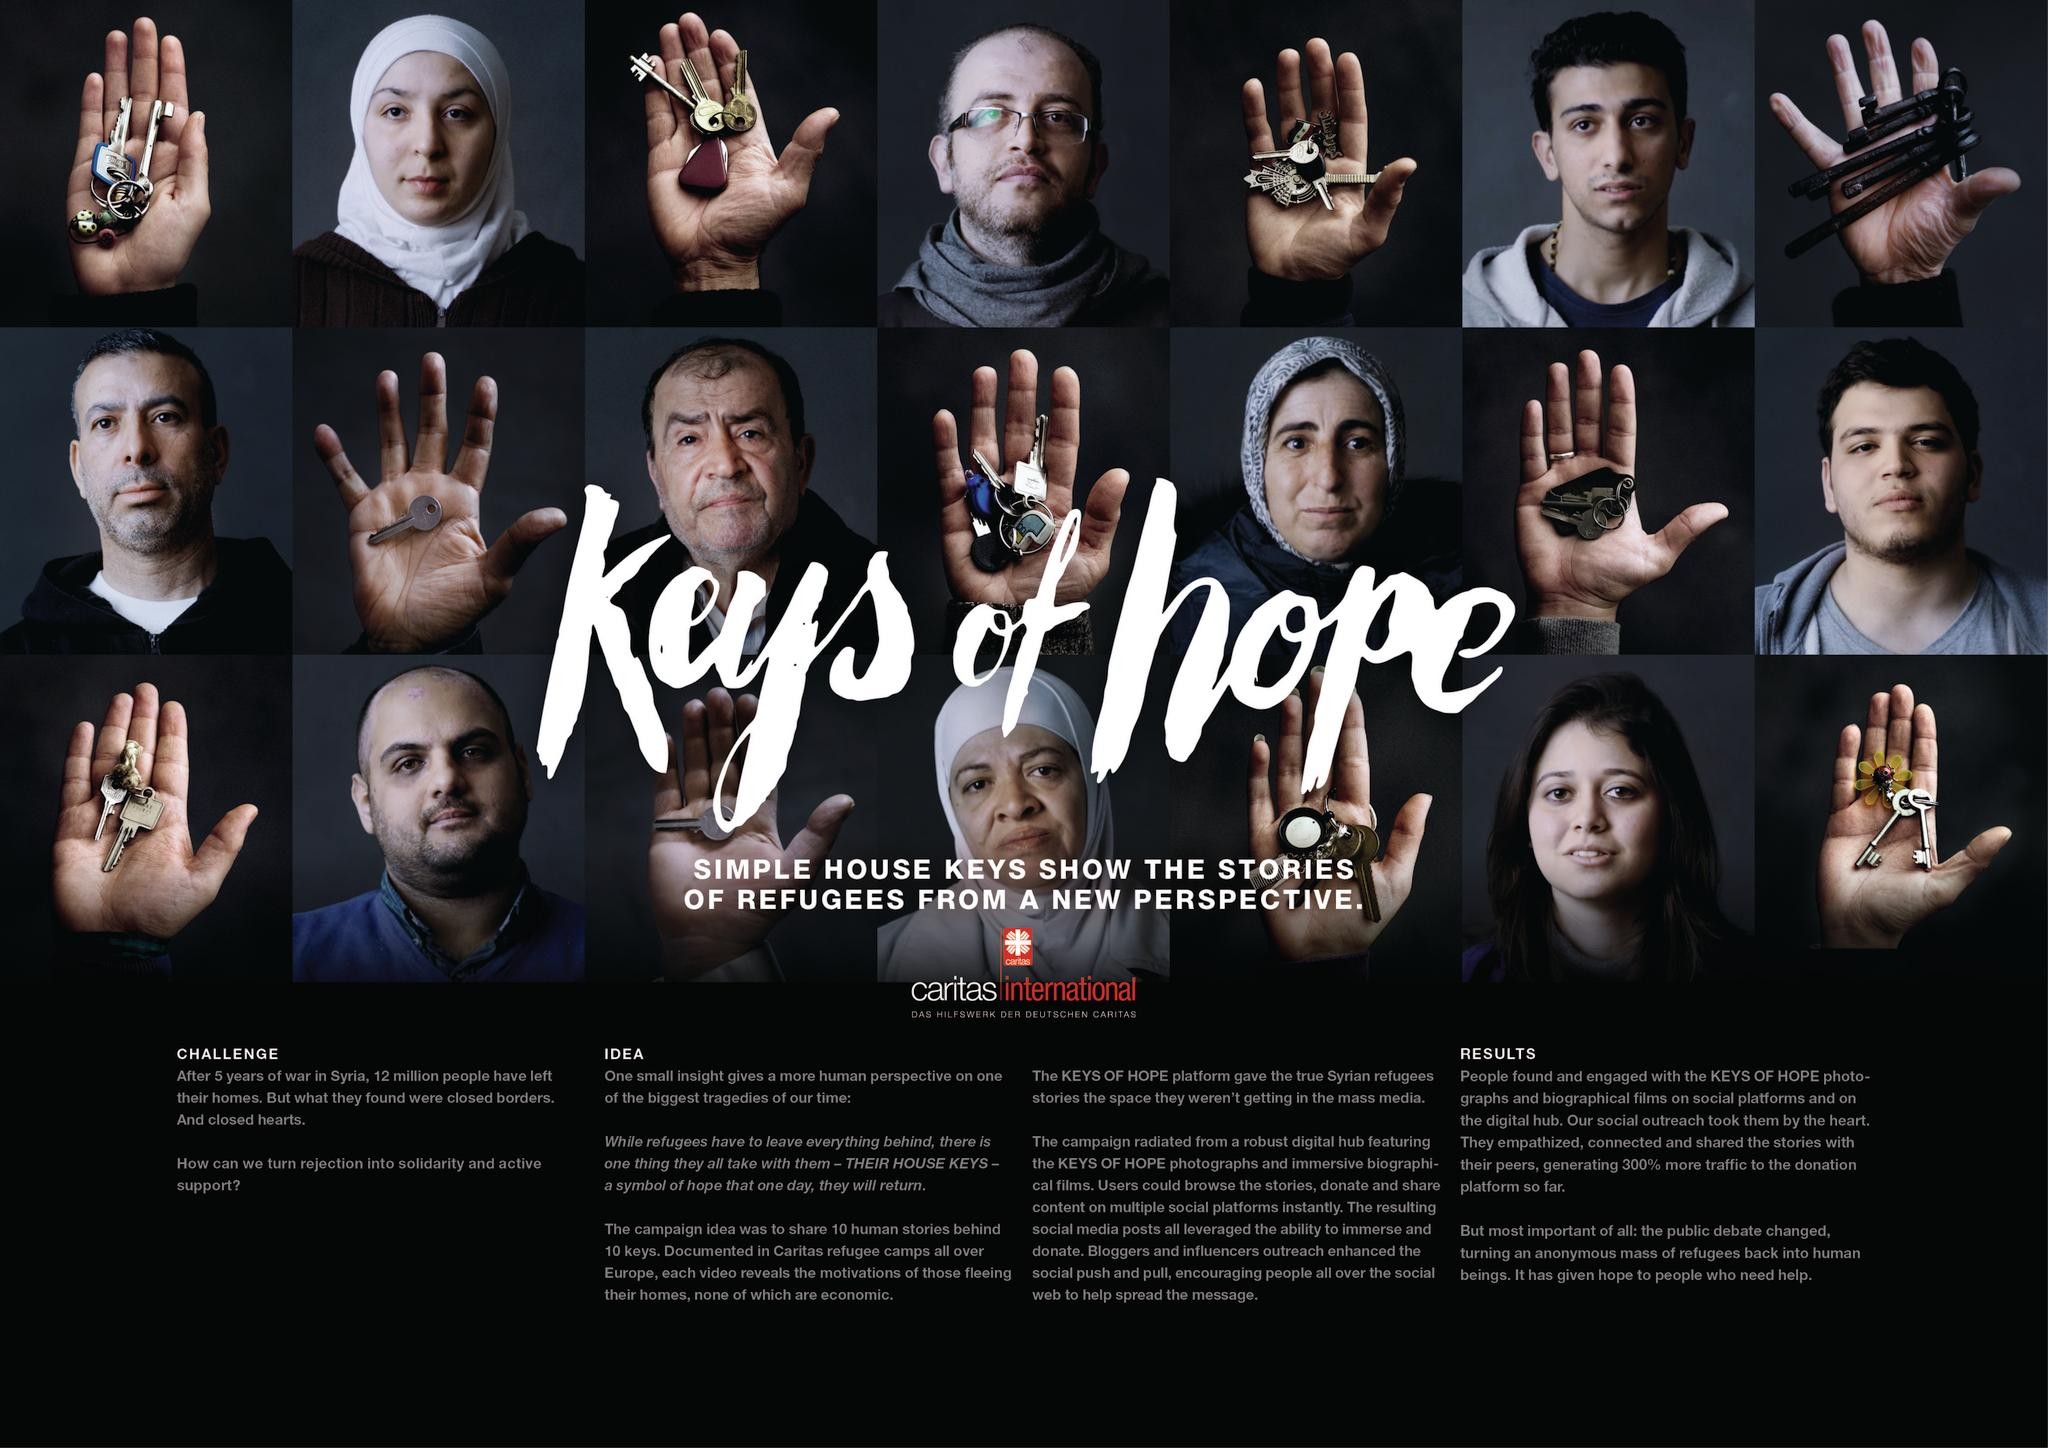 Keys of hope